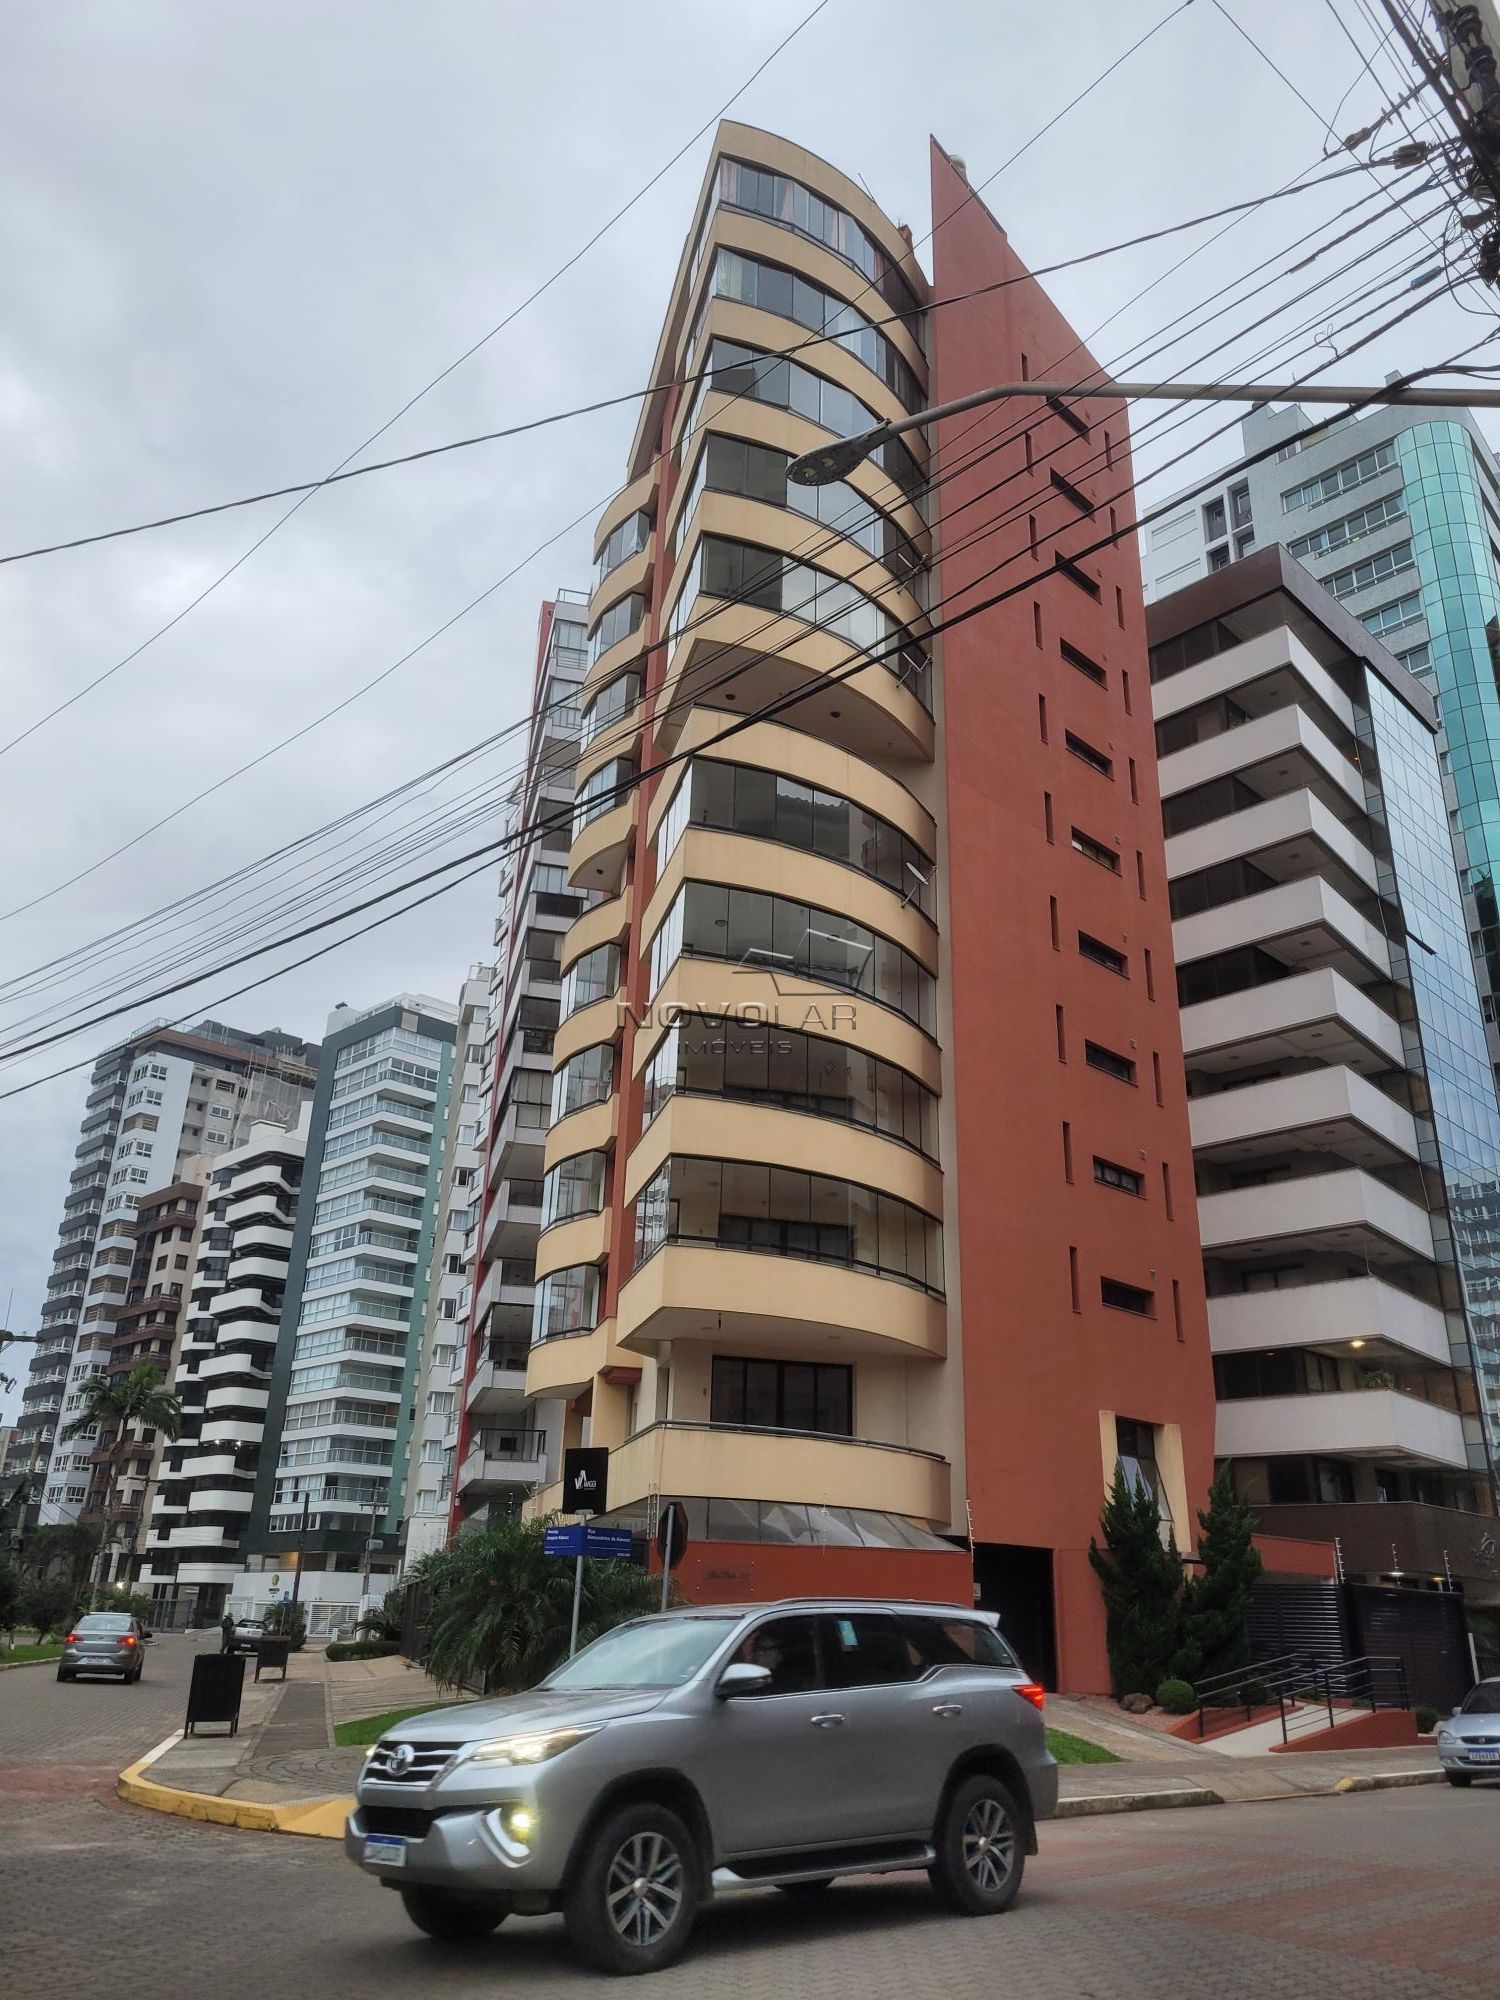 Apartamento com 3 dormitórios em Torres, no bairro Centro à venda